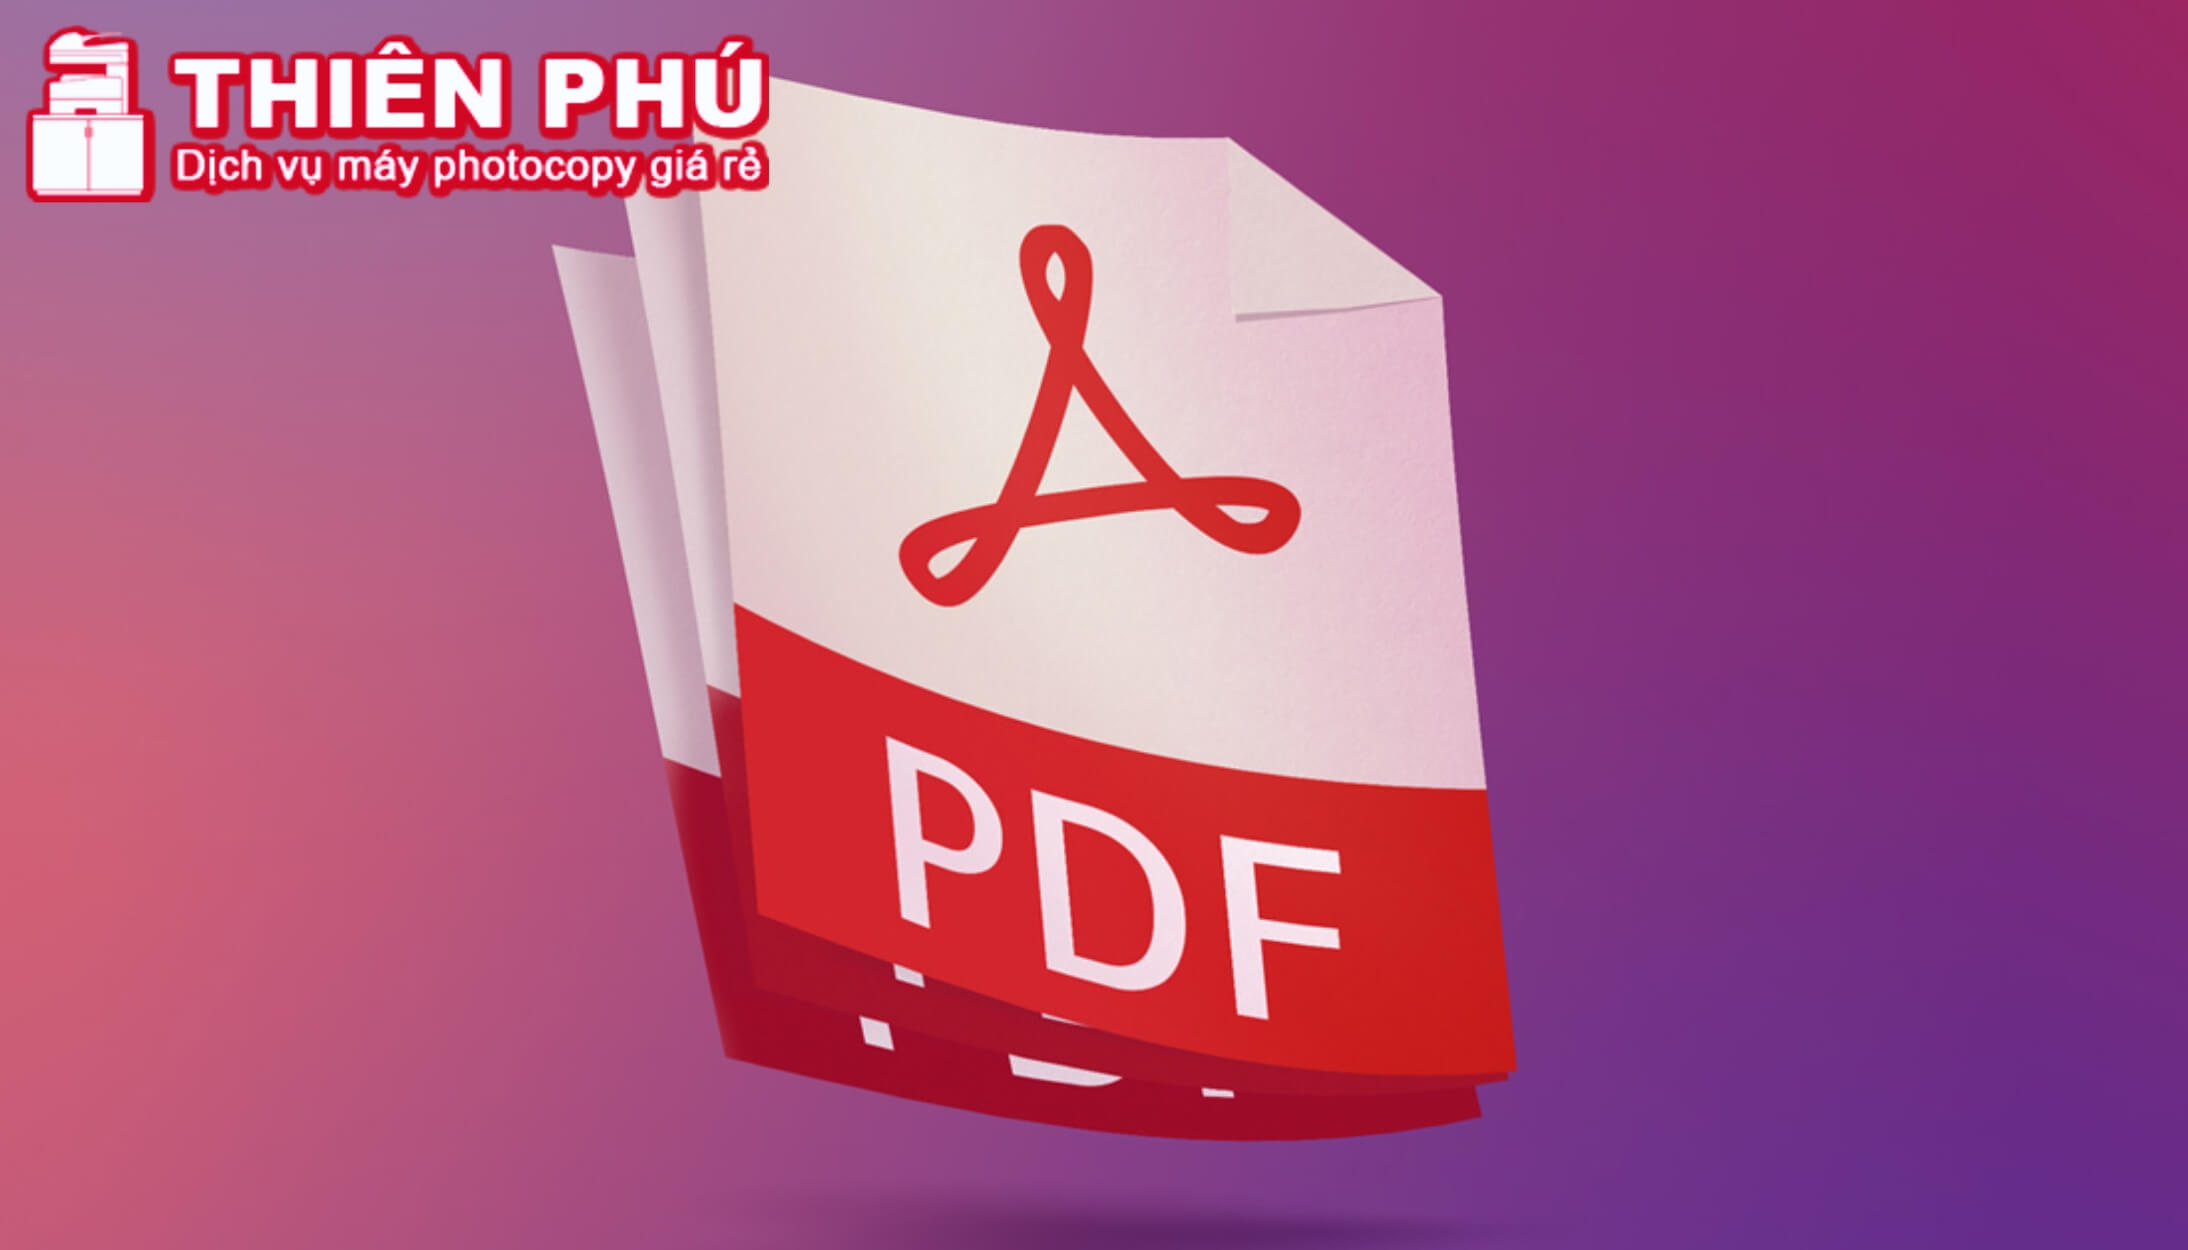 In file PDF bị chậm do đồ họa của file